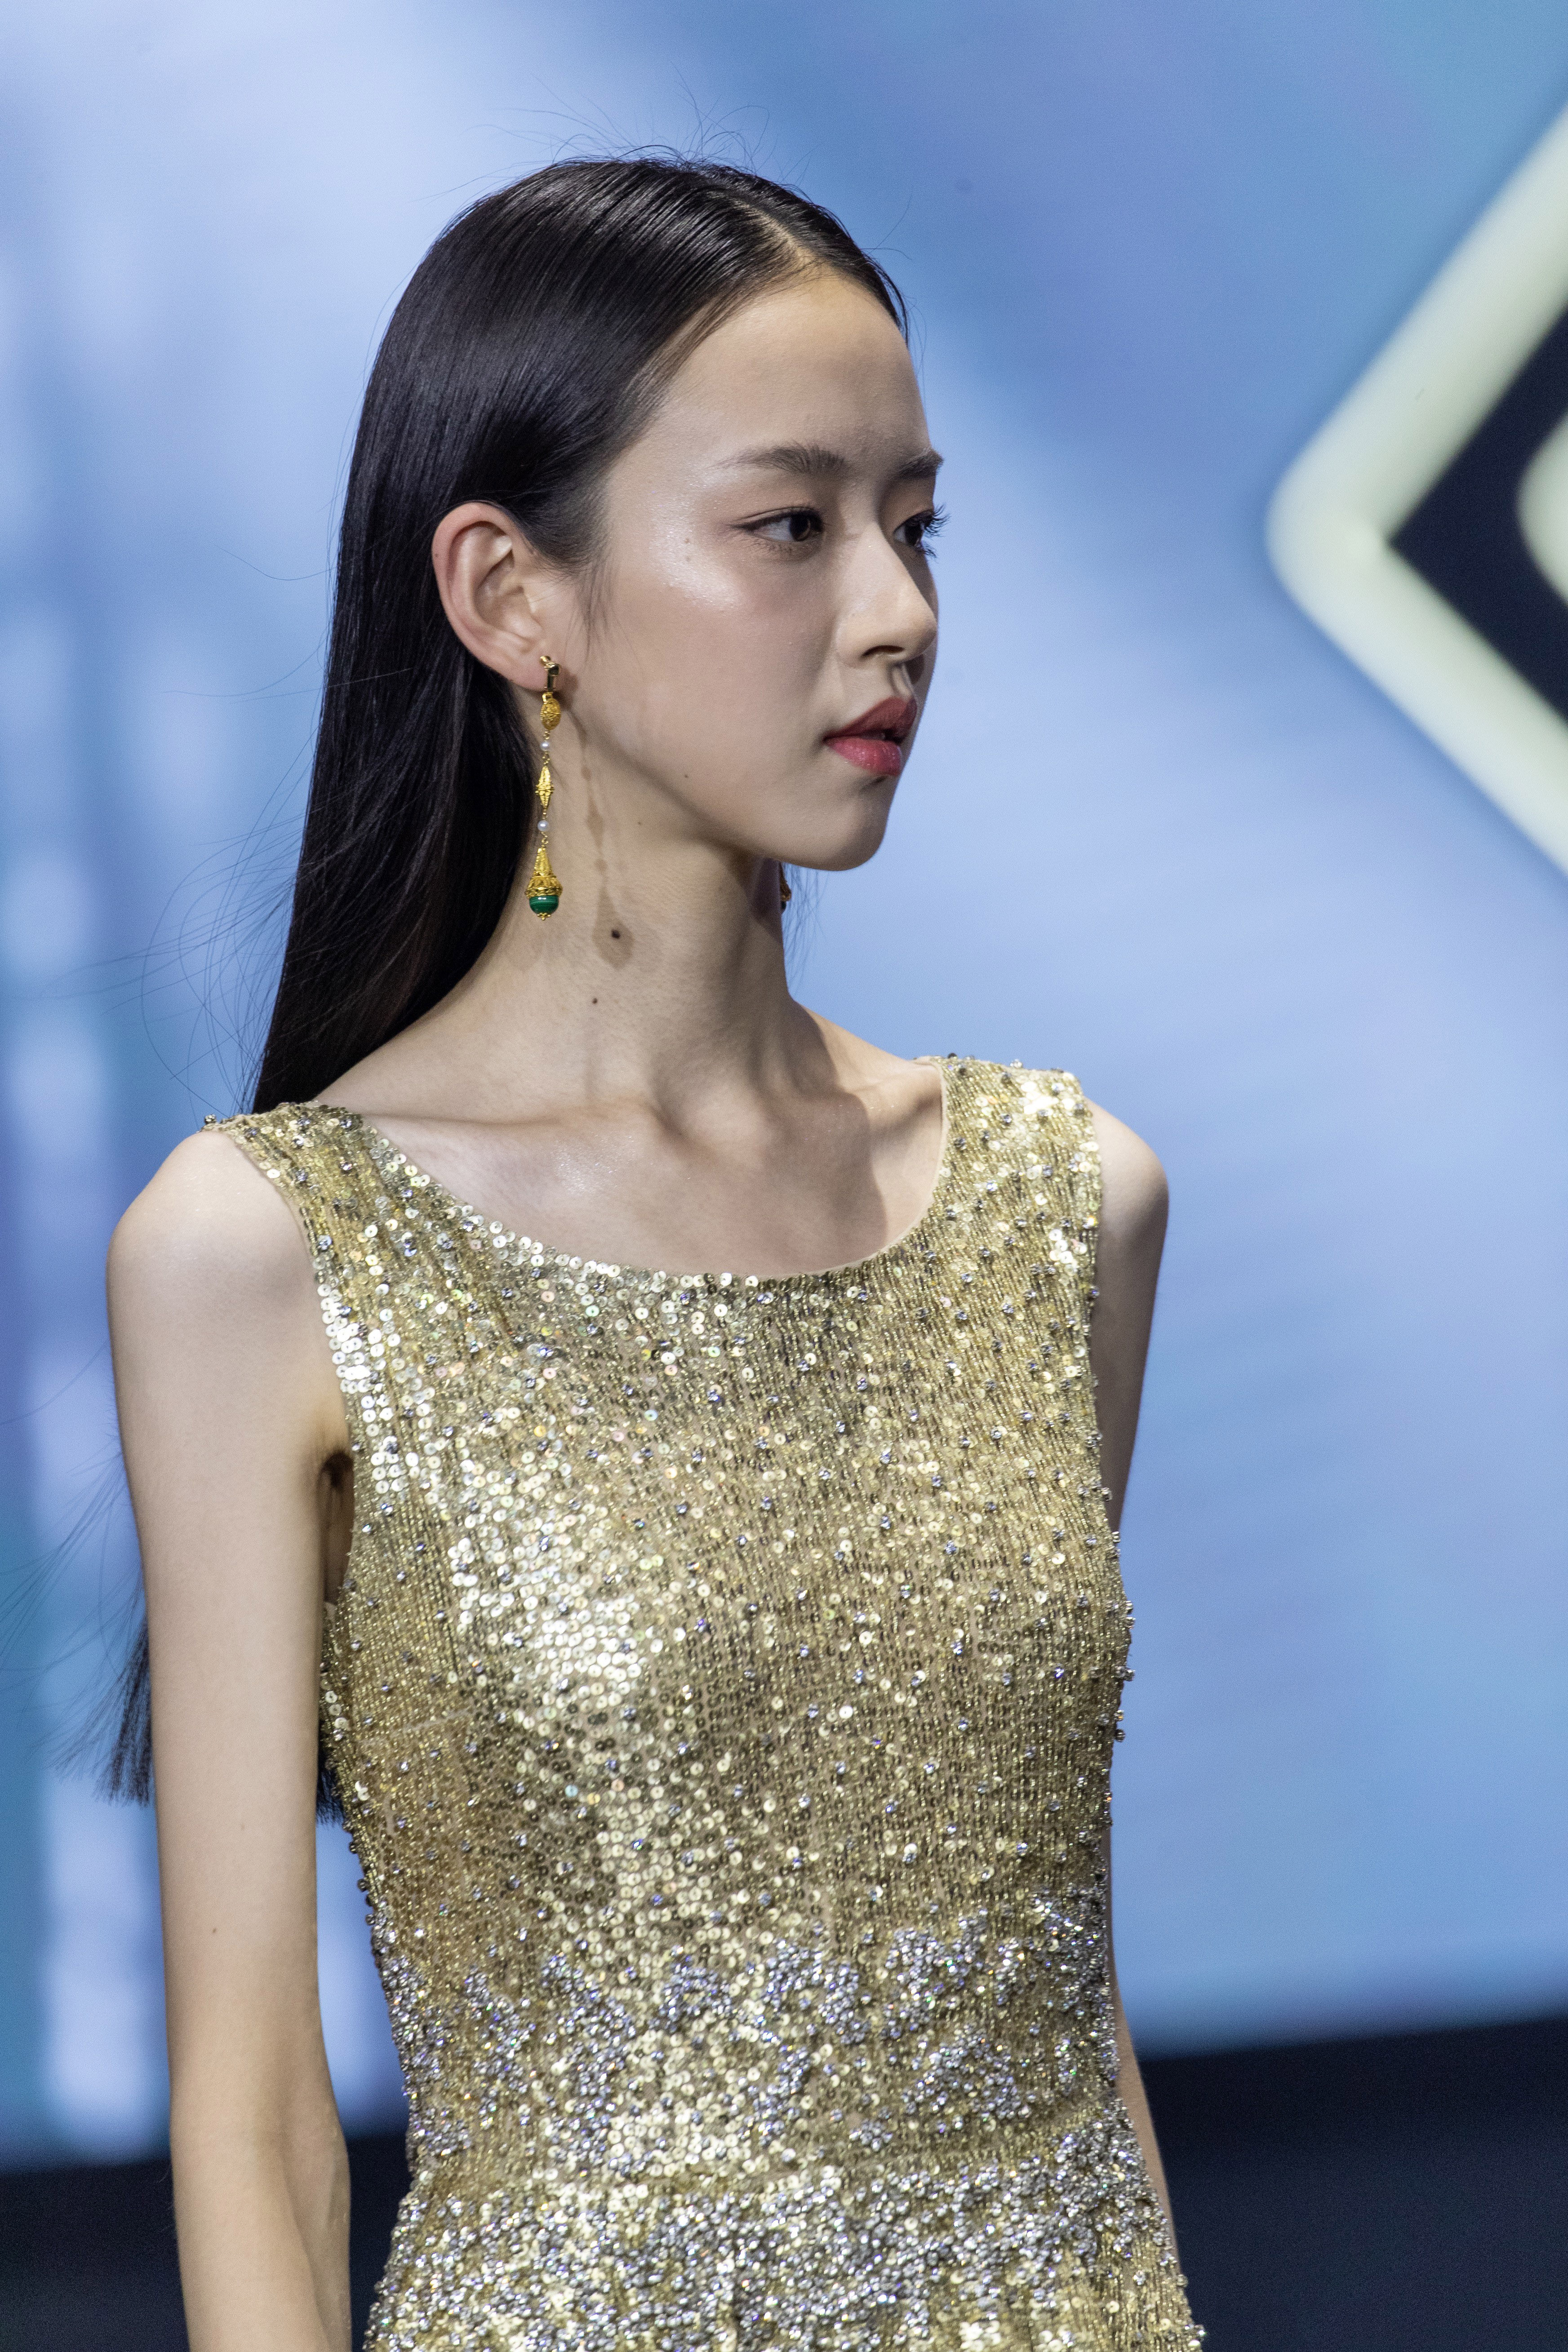 2020中国模特大赛冠军图片